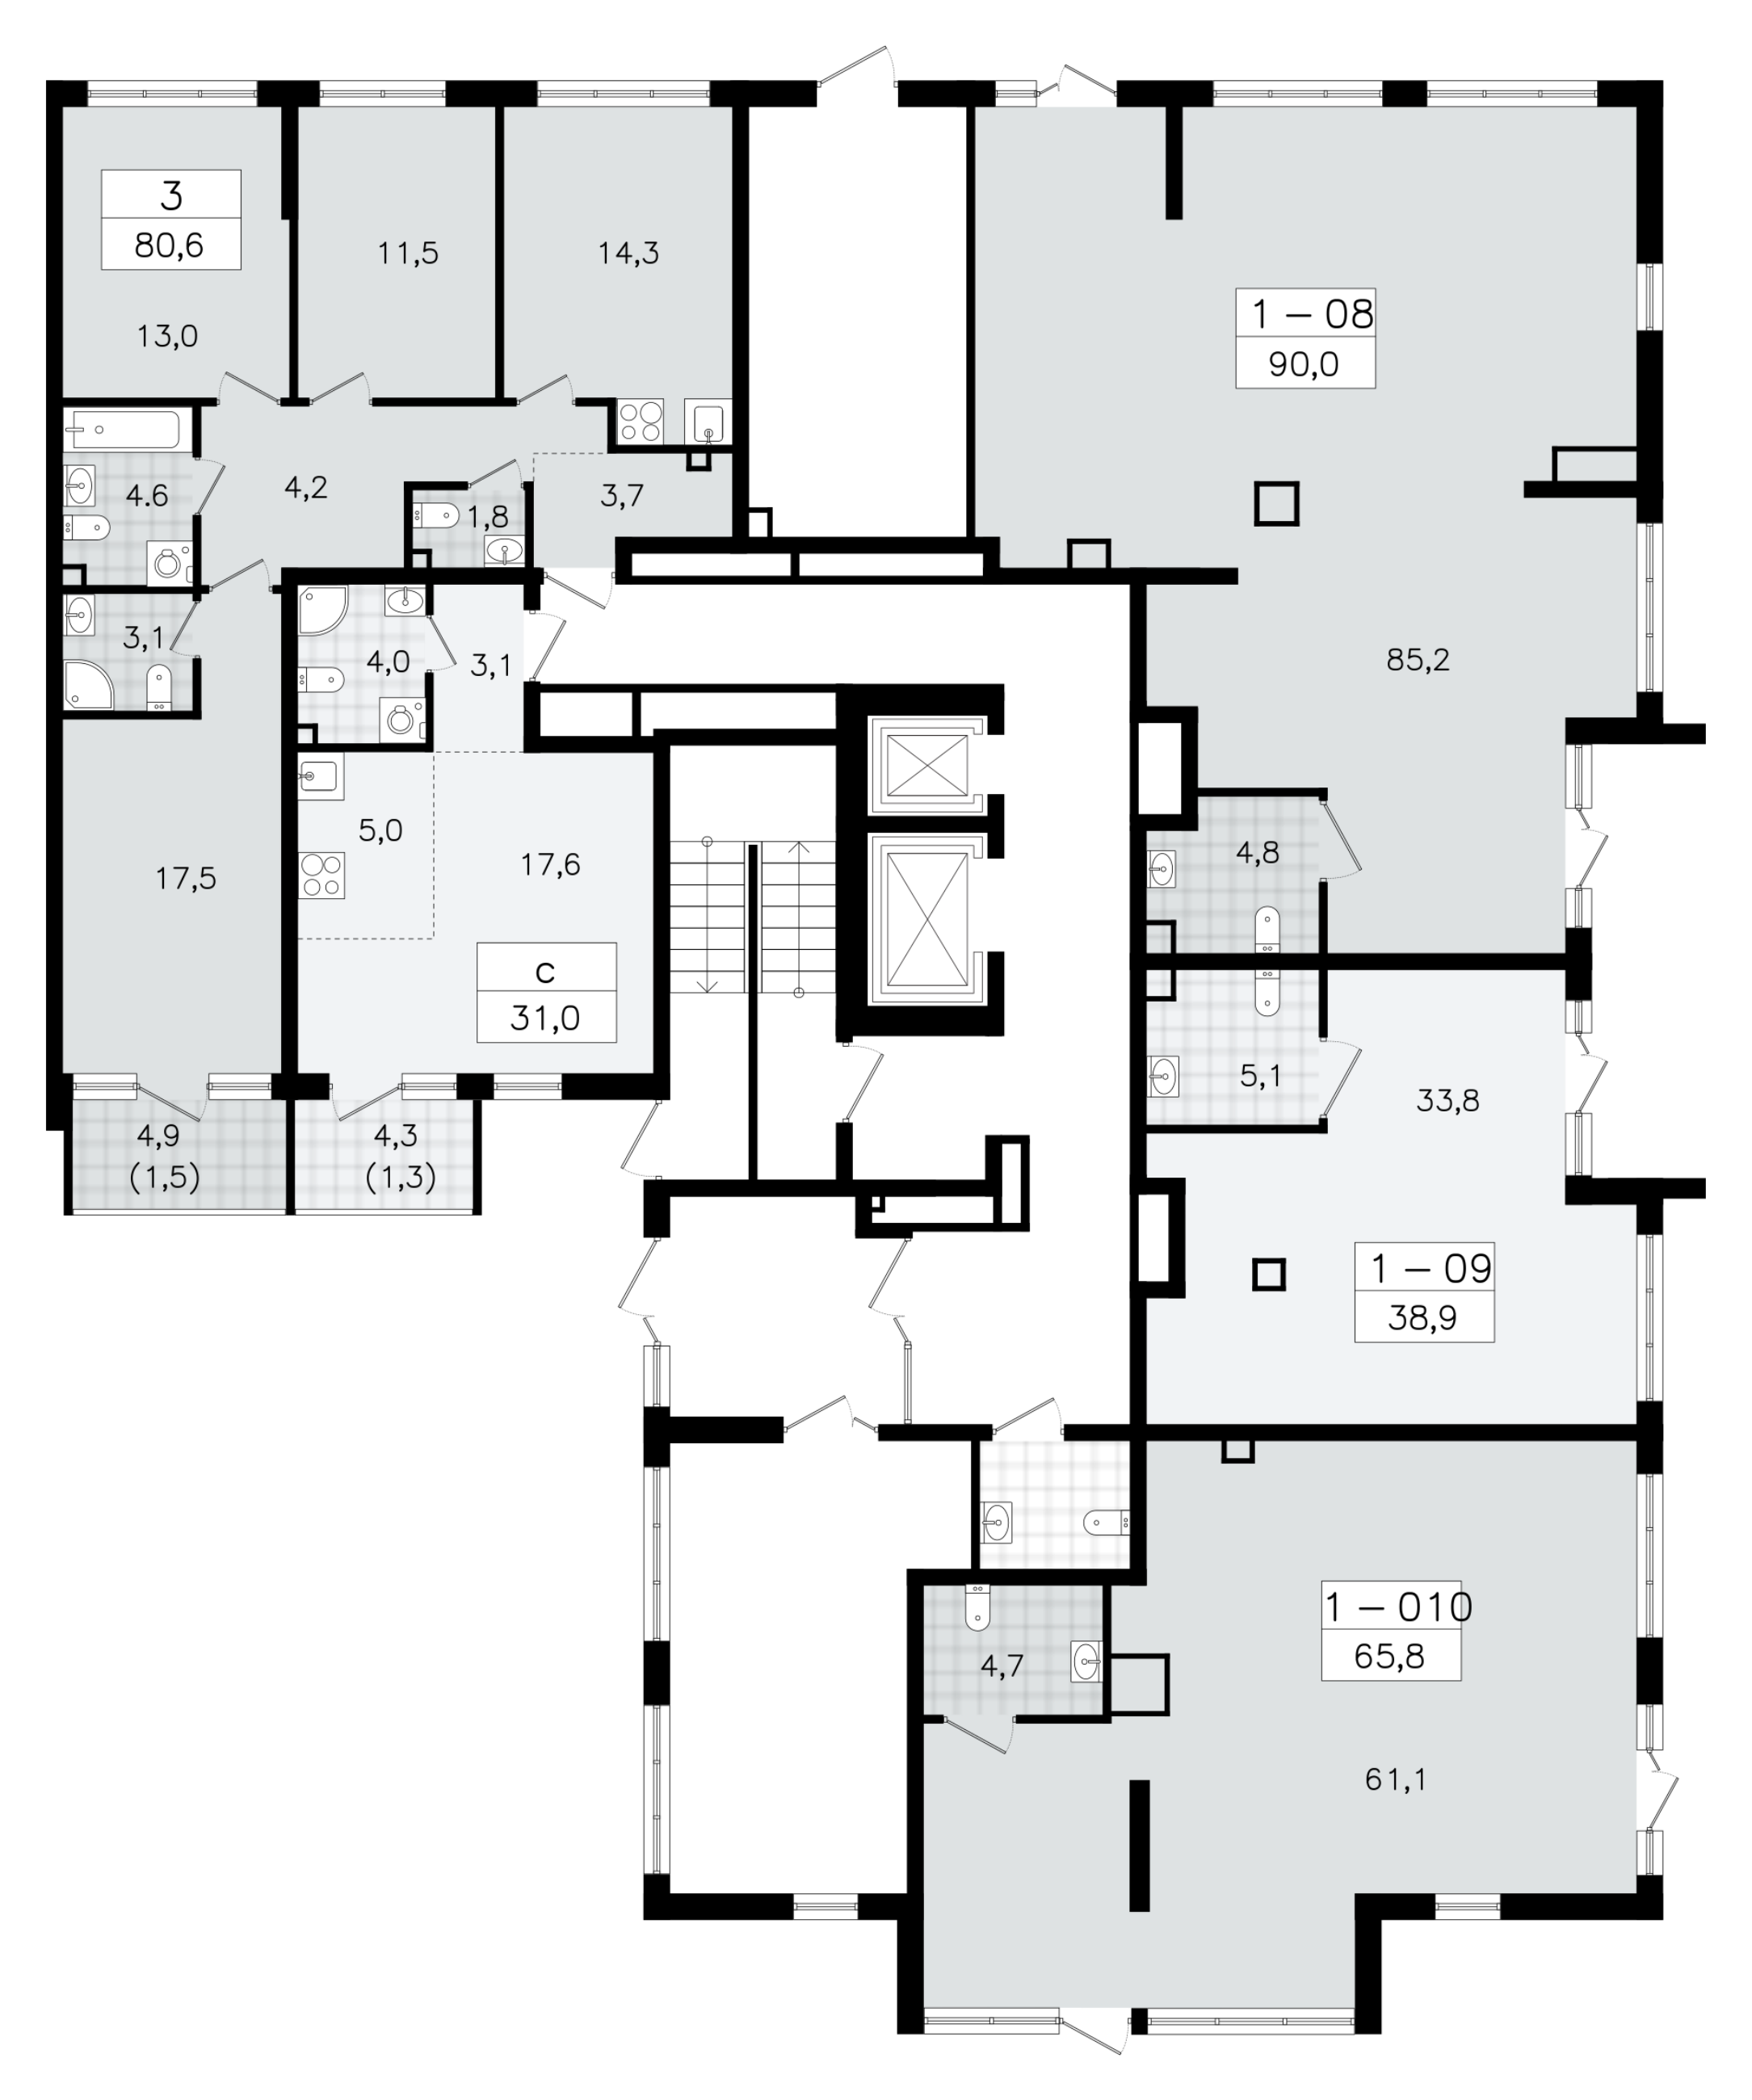 Помещение, 65.8 м² - планировка этажа